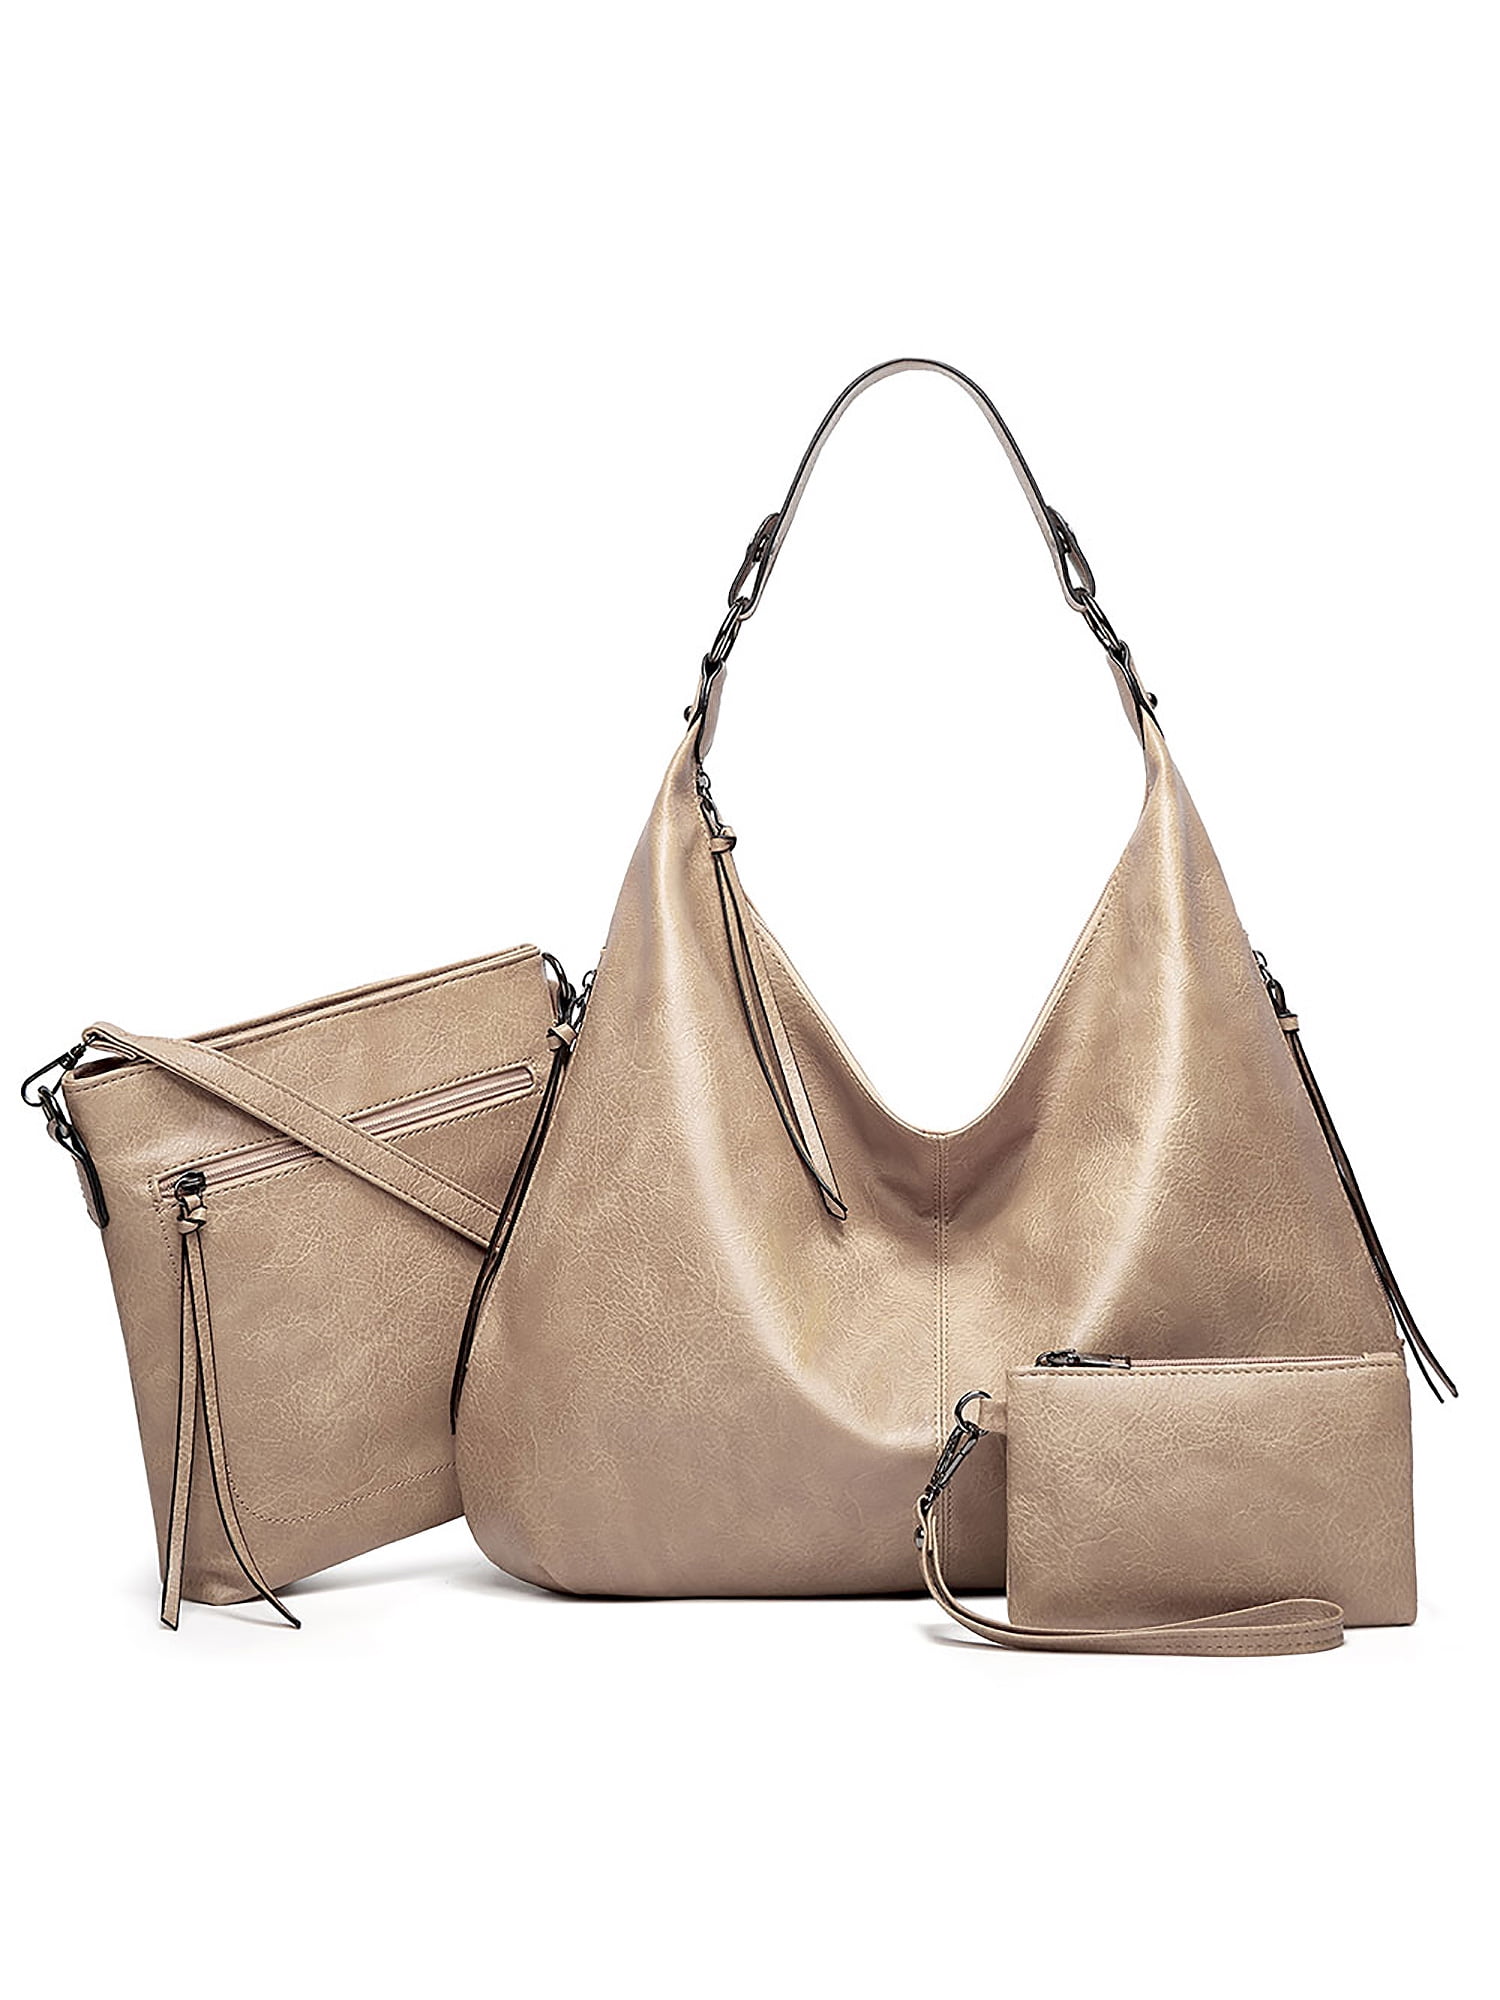 Womens Large Leather Handbag Shoulder Bags Tote Purse Messenger Hobo Satchel Bag 